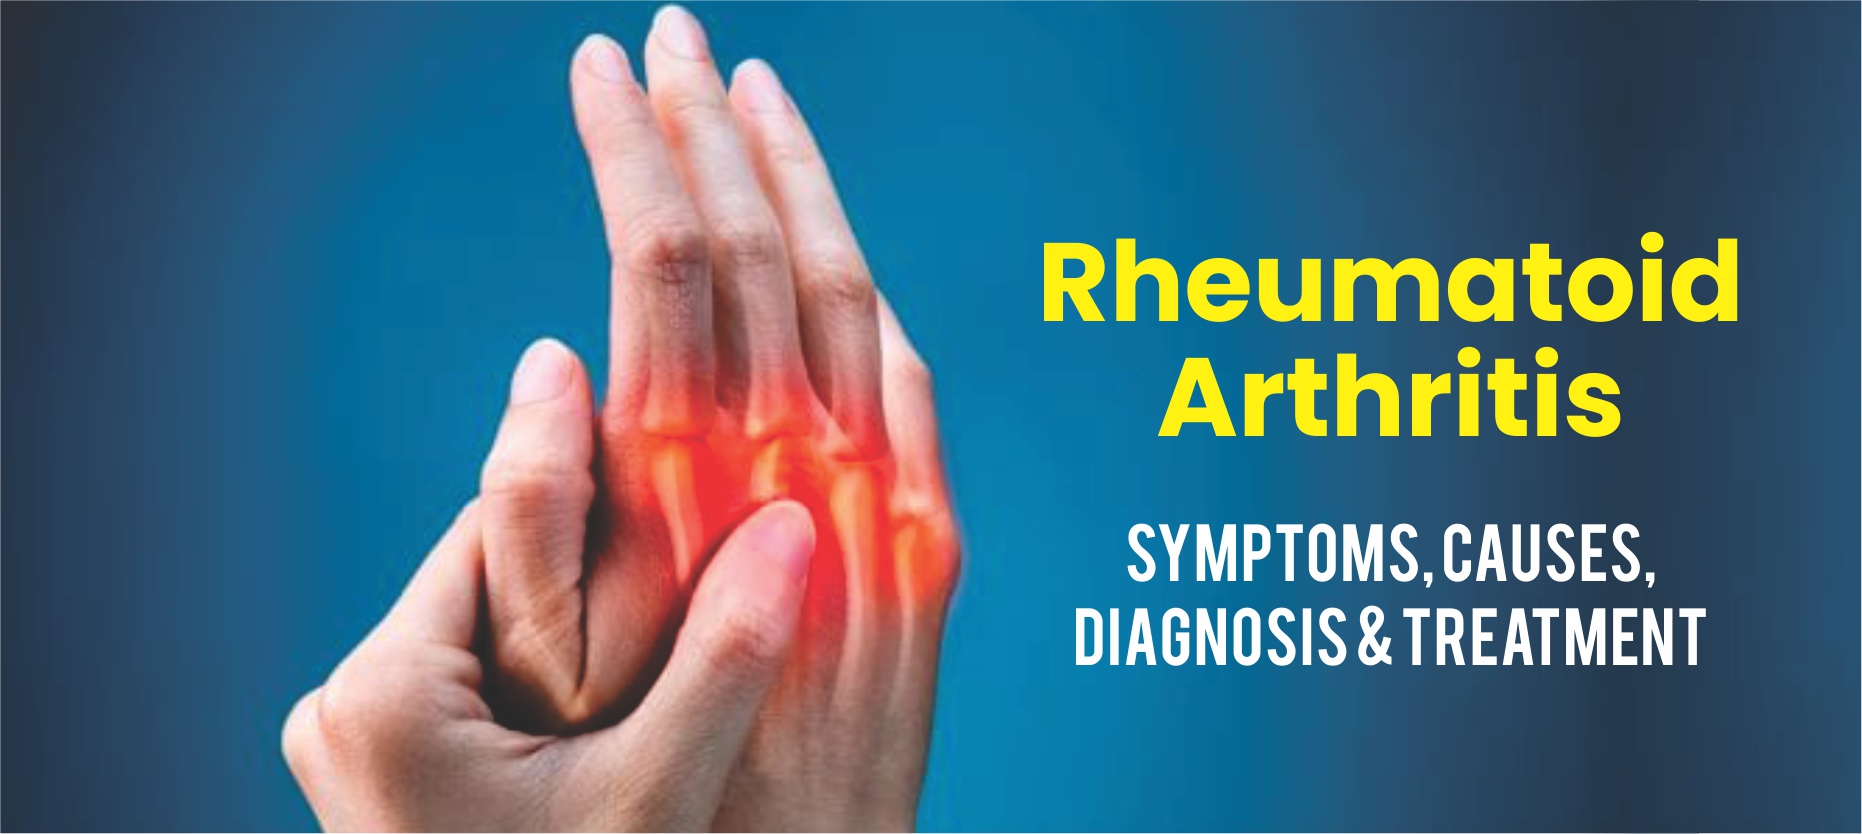 Rheumatoid Arthritis – An Autoimmune Disorder?